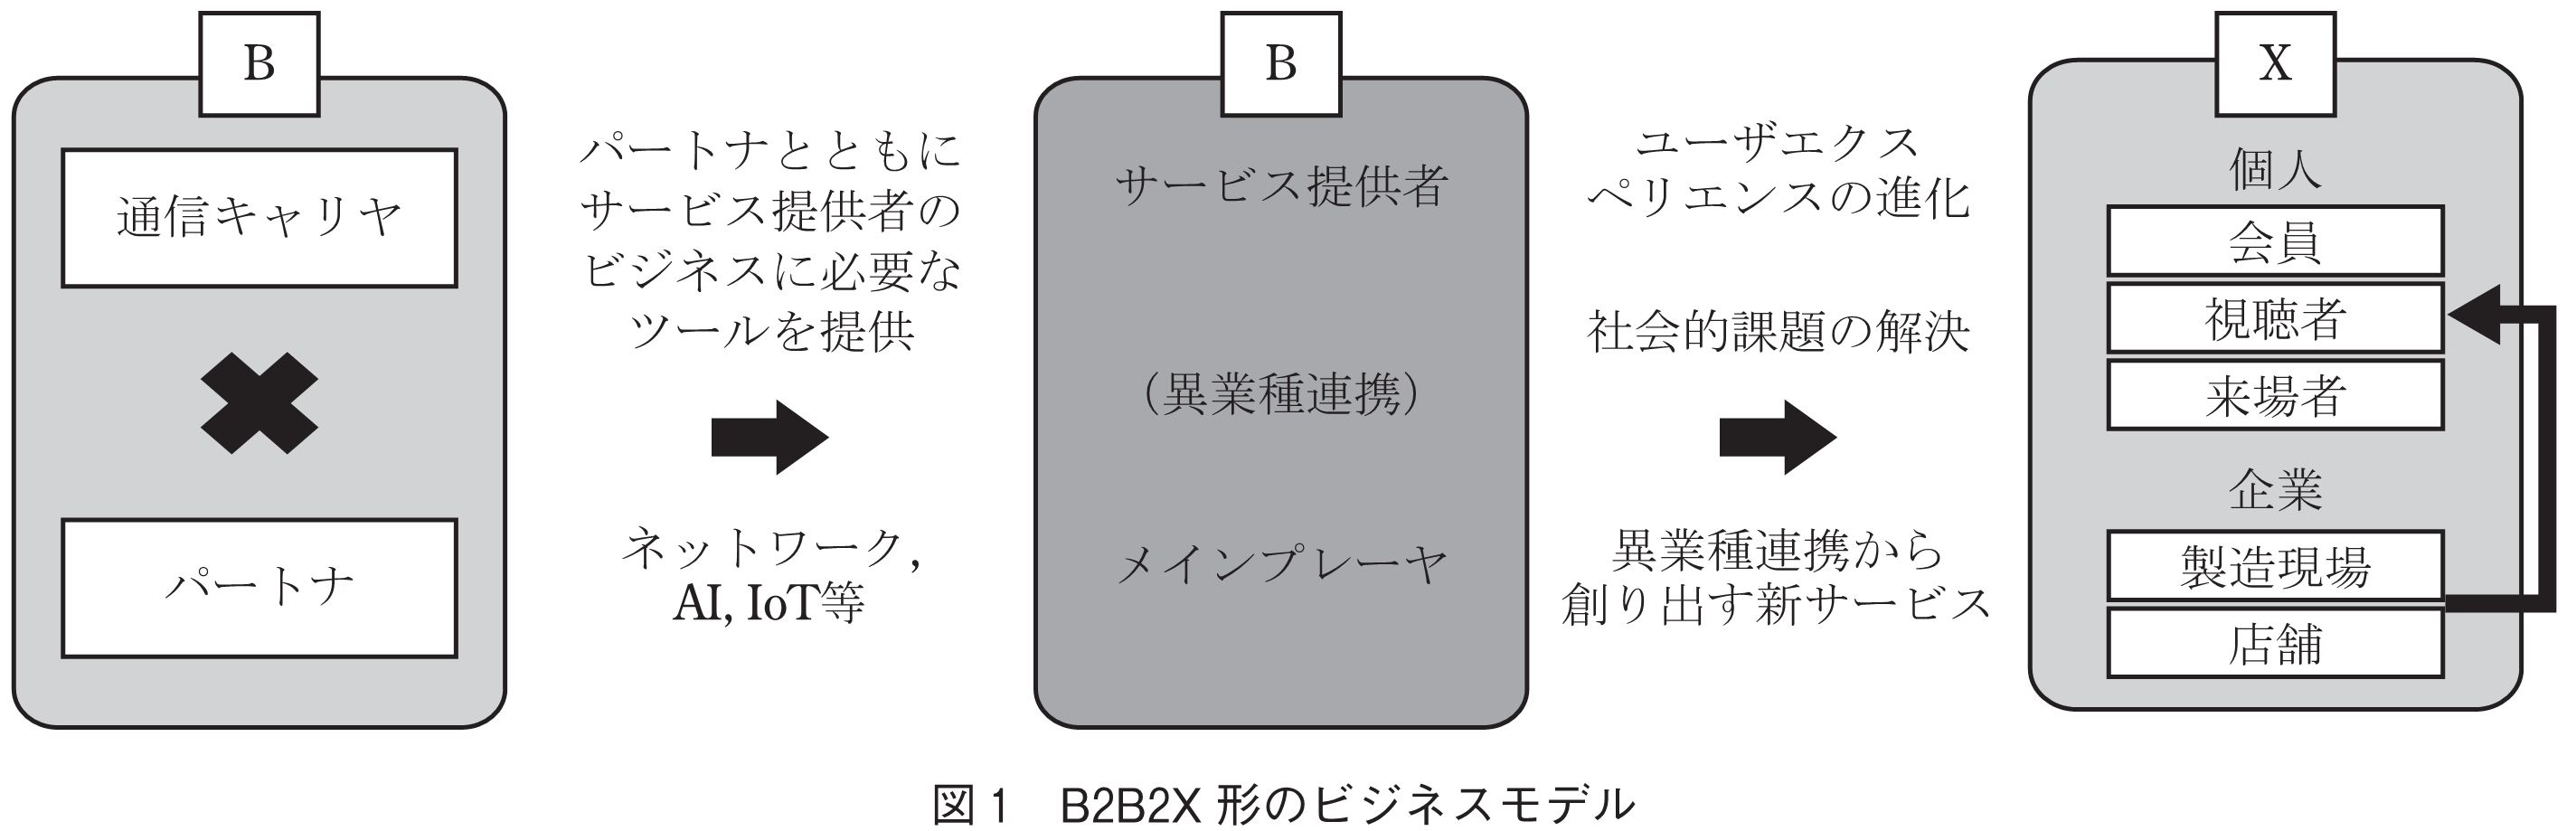 図1 B2B2X 形のビジネスモデル